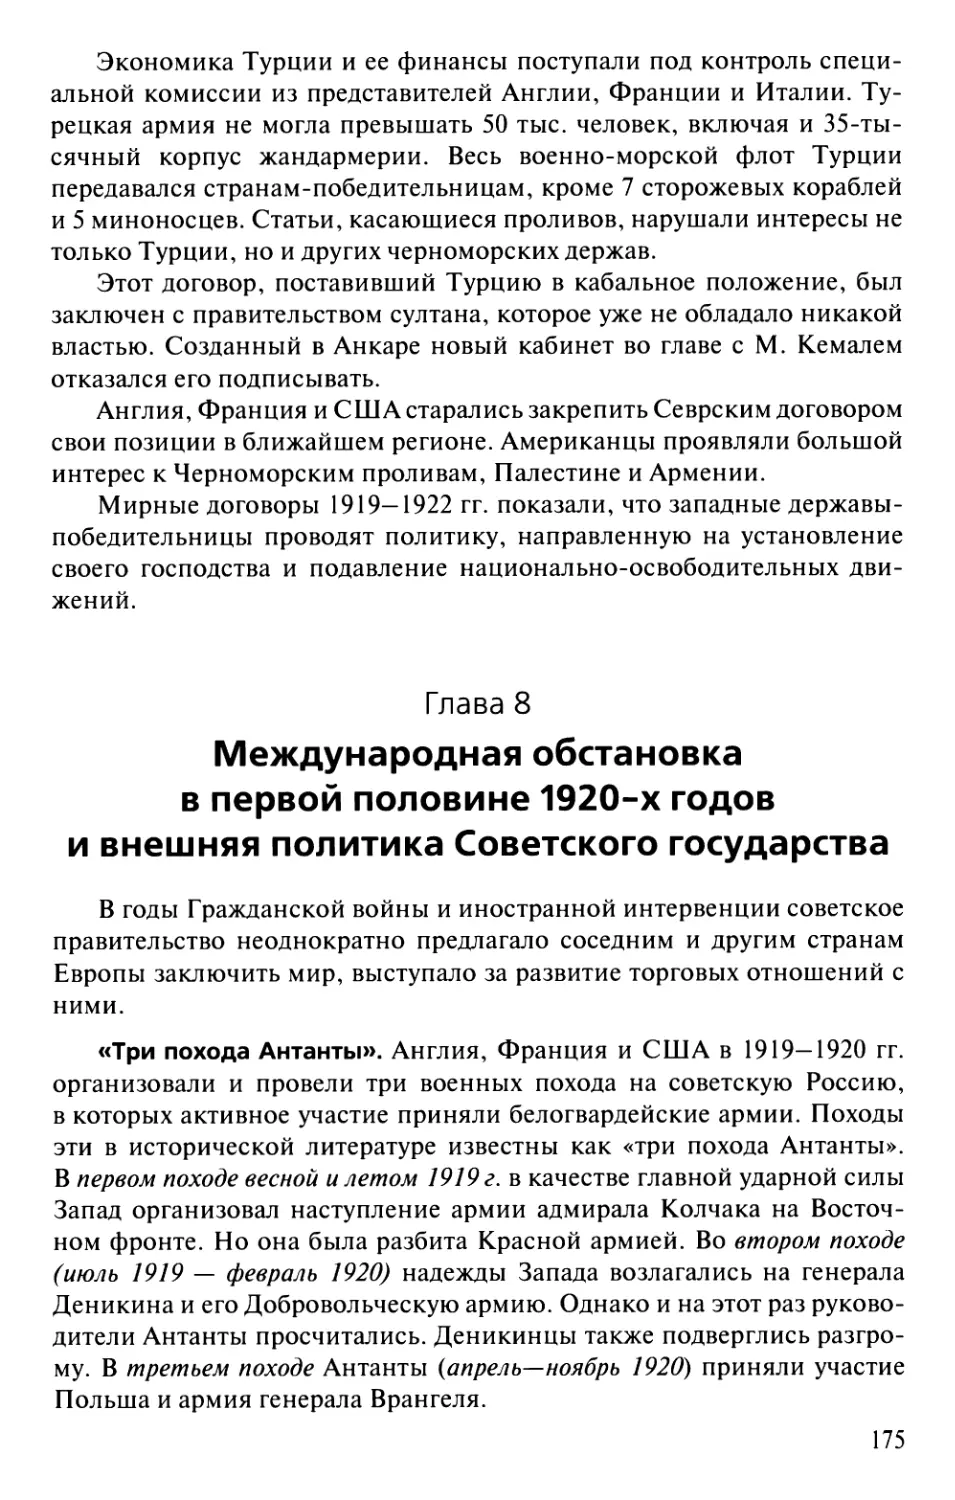 Глава 8. Международная обстановка в первой половине 1920-х годов и внешняя политика Советского государства